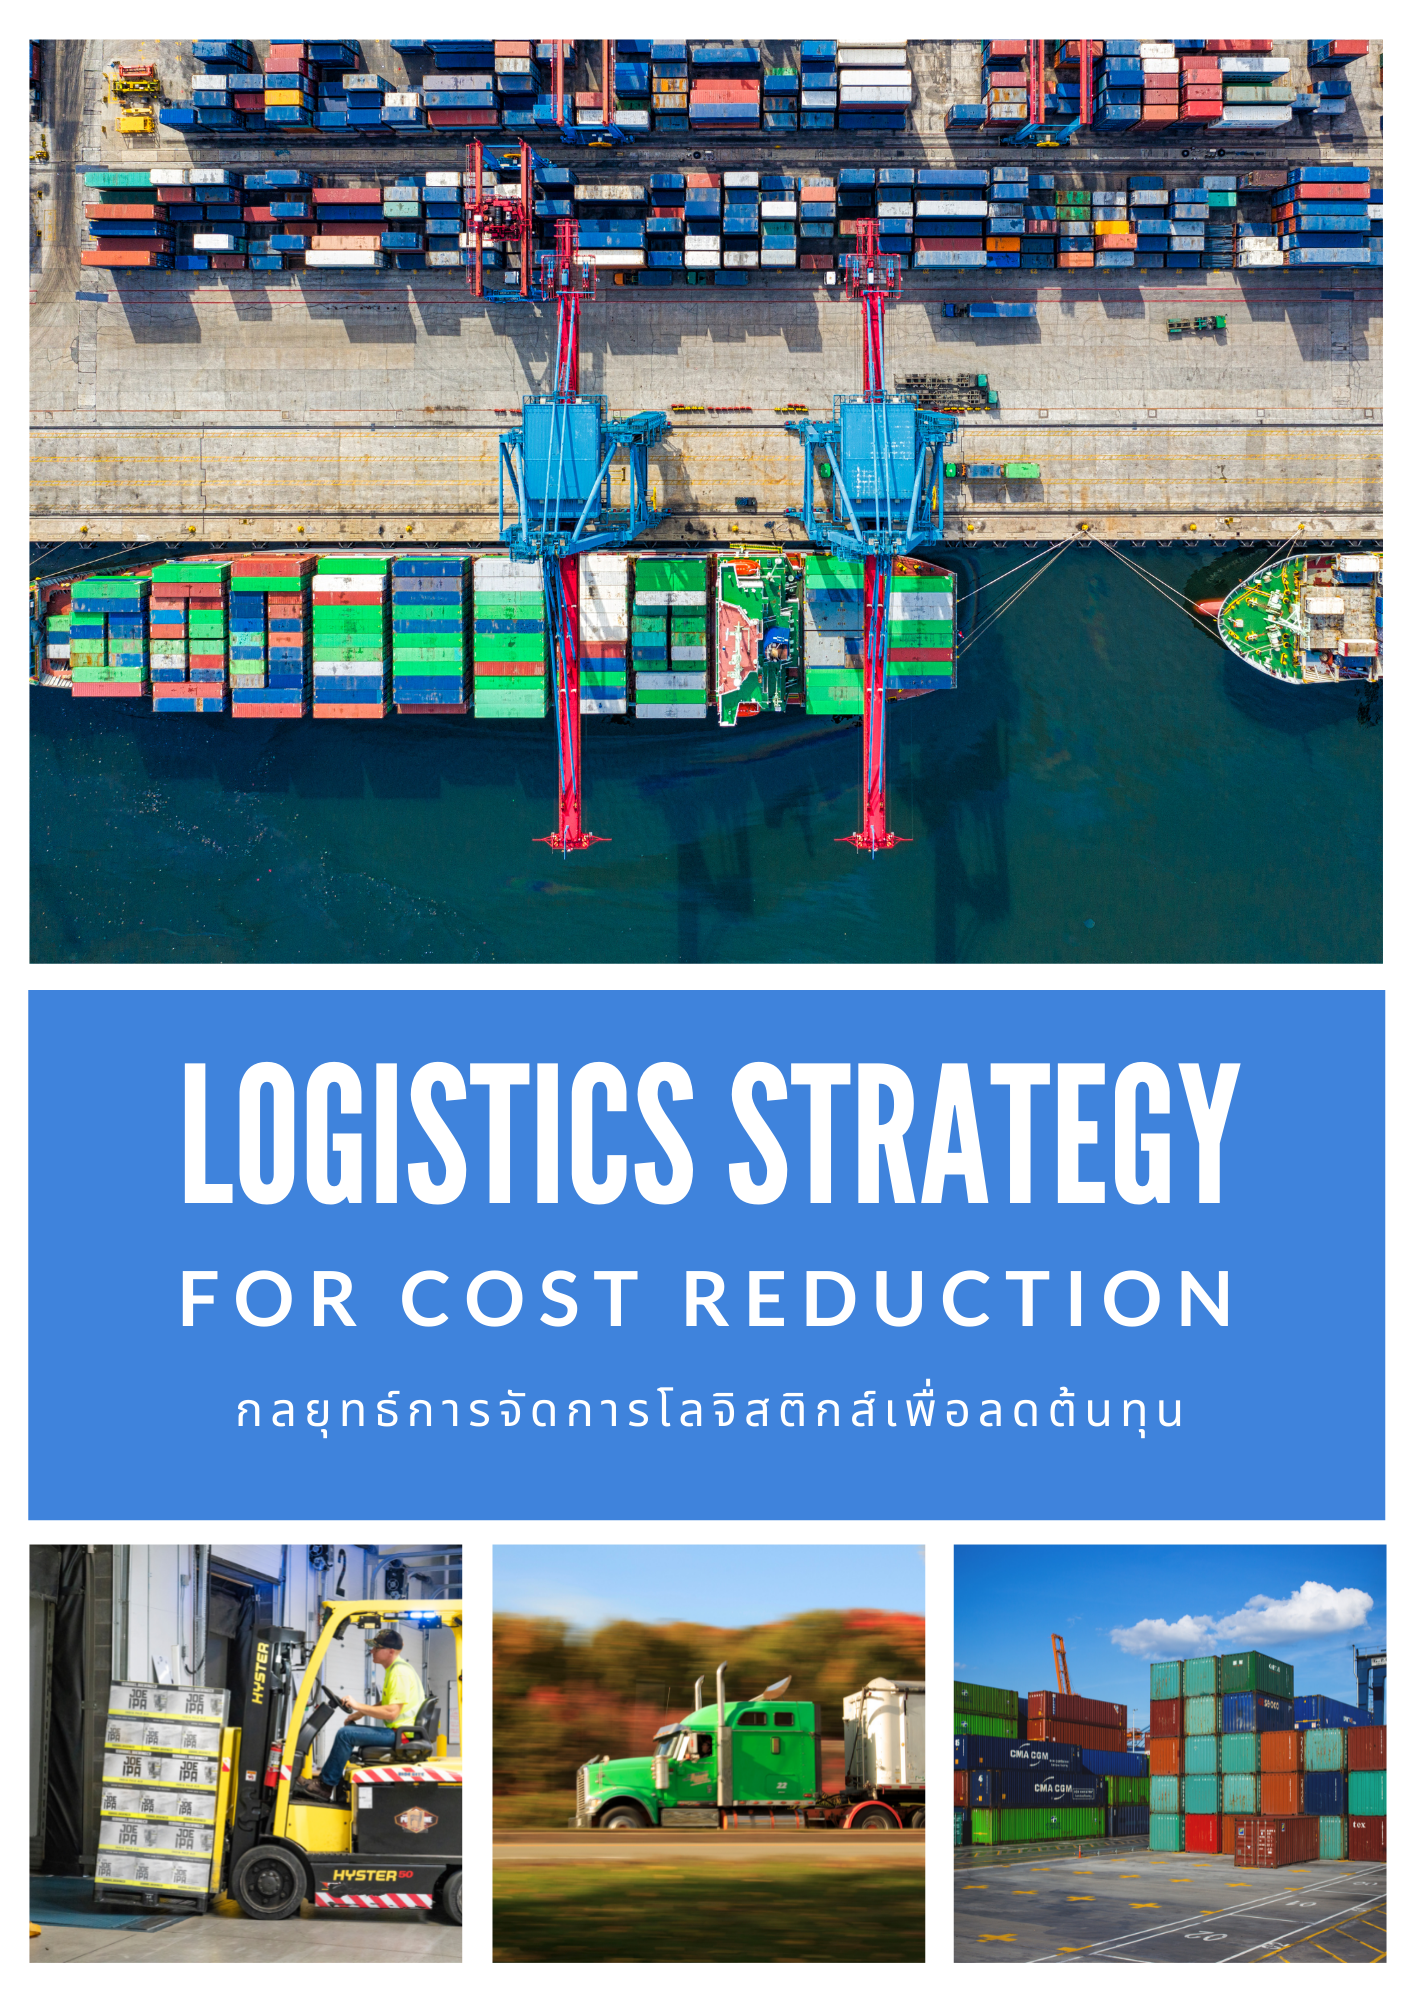 หลักสูตรอบรมออนไลน์ กลยุทธ์การจัดการโลจิสติกส์เพื่อลดต้นทุน (Logistics Strategy for Cost Reduction) - หลักสูตร 3 ชั่วโมง